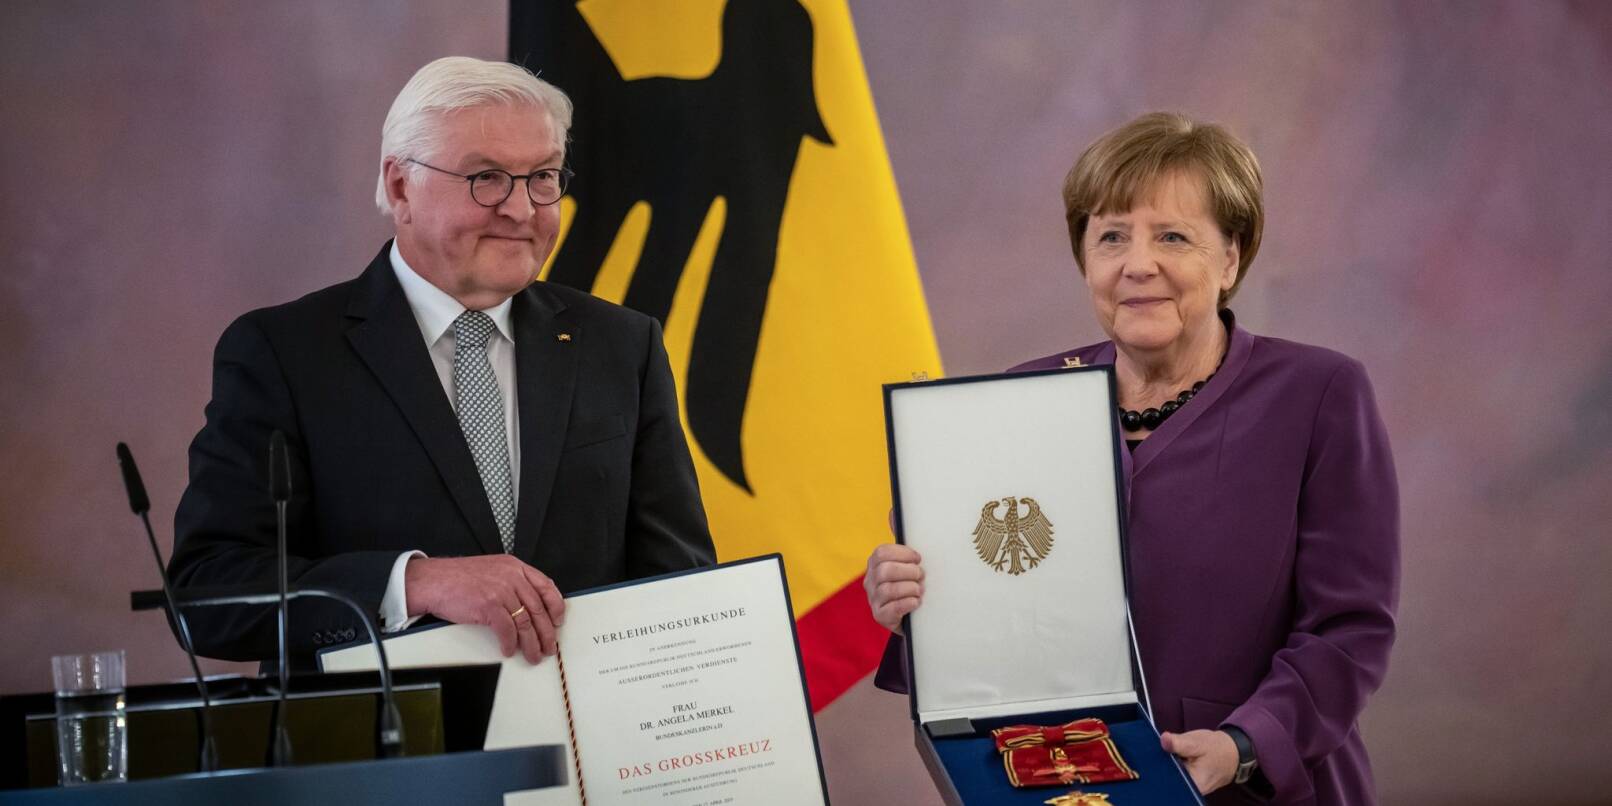 Altkanzlerin Angela Merkel erhält von Bundespräsident Frank-Walter Steinmeier das Großkreuz des Verdienstordens der Bundesrepublik Deutschland in besonderer Ausführung im Schloss Bellevue verliehen.